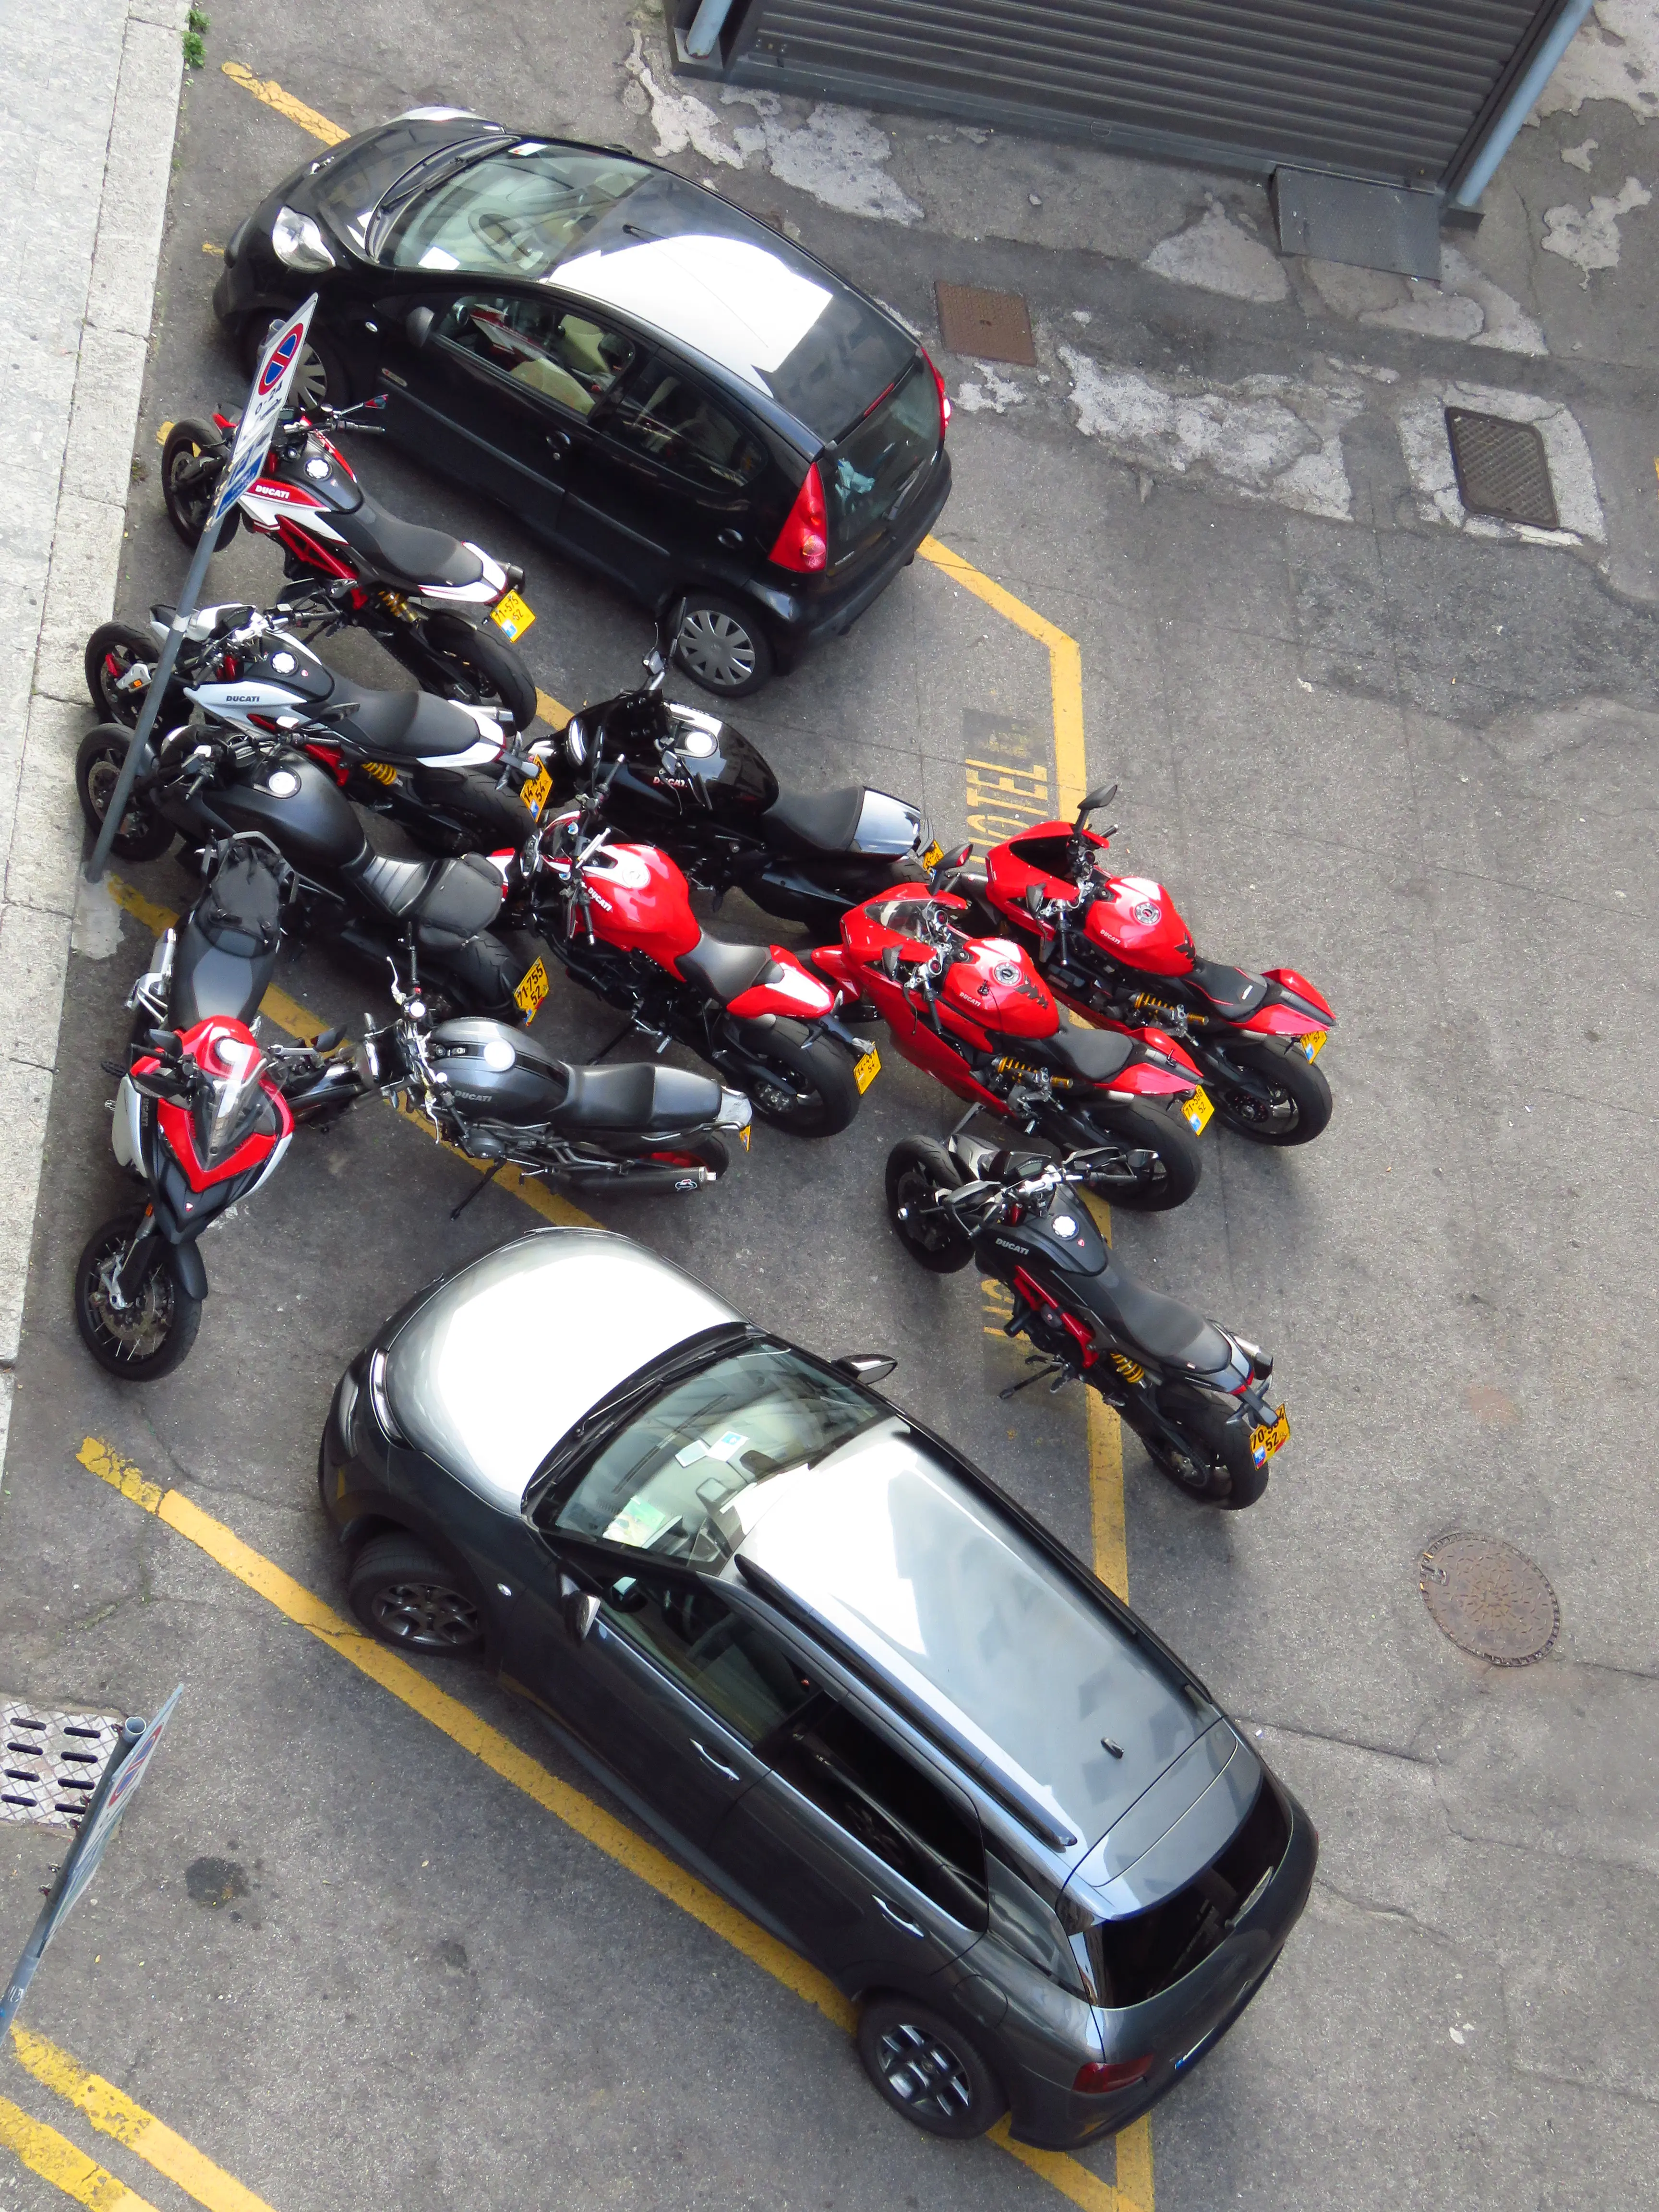 שאלה, כמה אופנועים ישראליים נכנסים לחניה אחת?